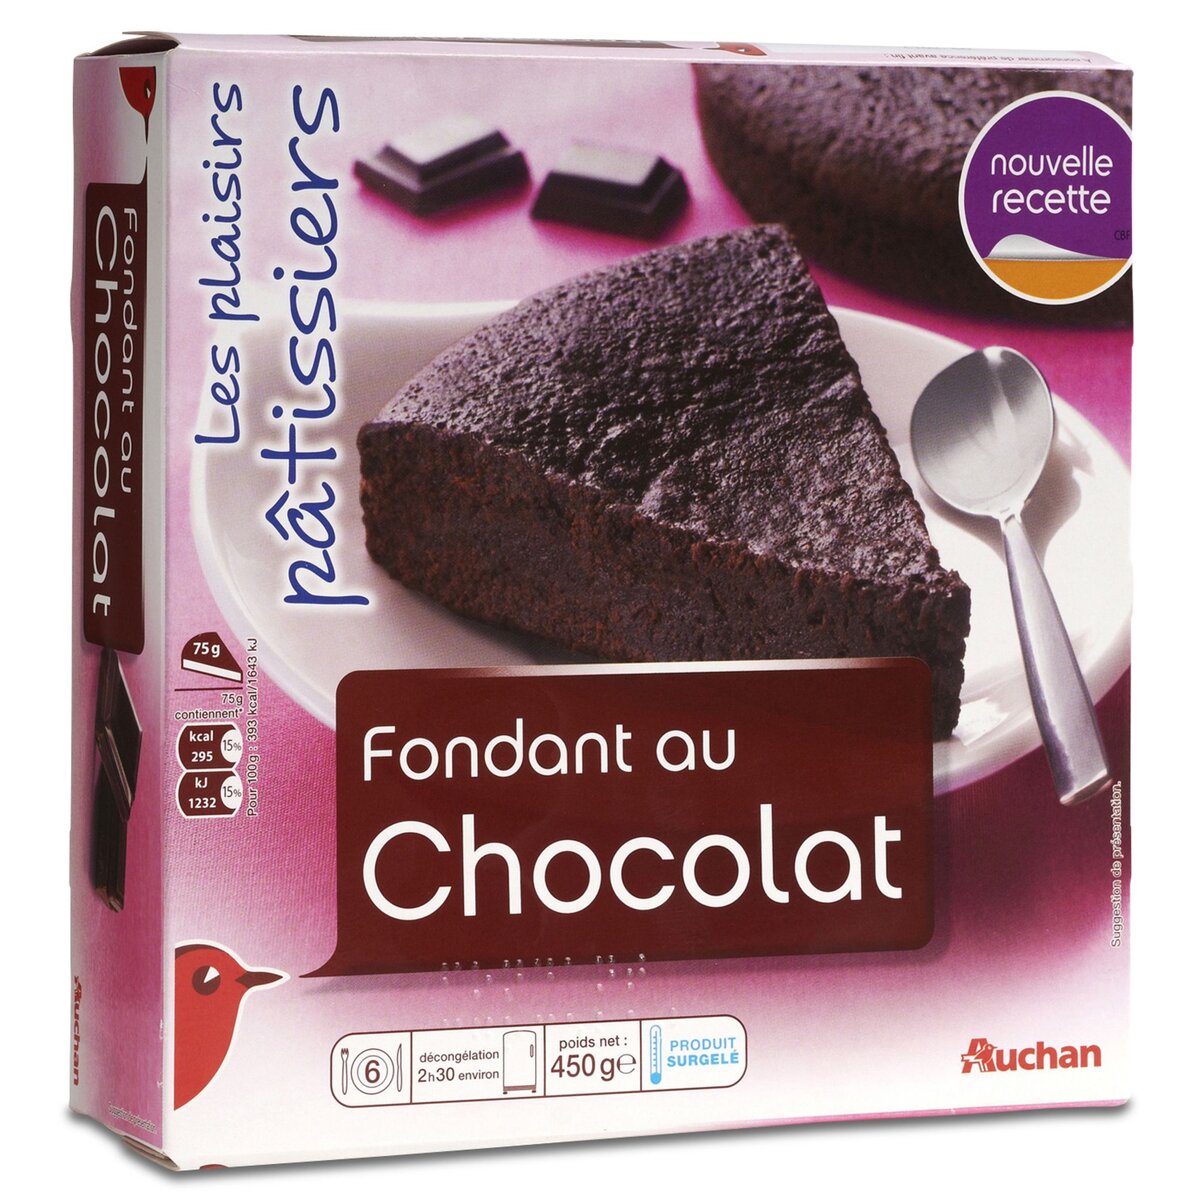 AUCHAN Auchan Fondant au chocolat 450g 6 parts 450g